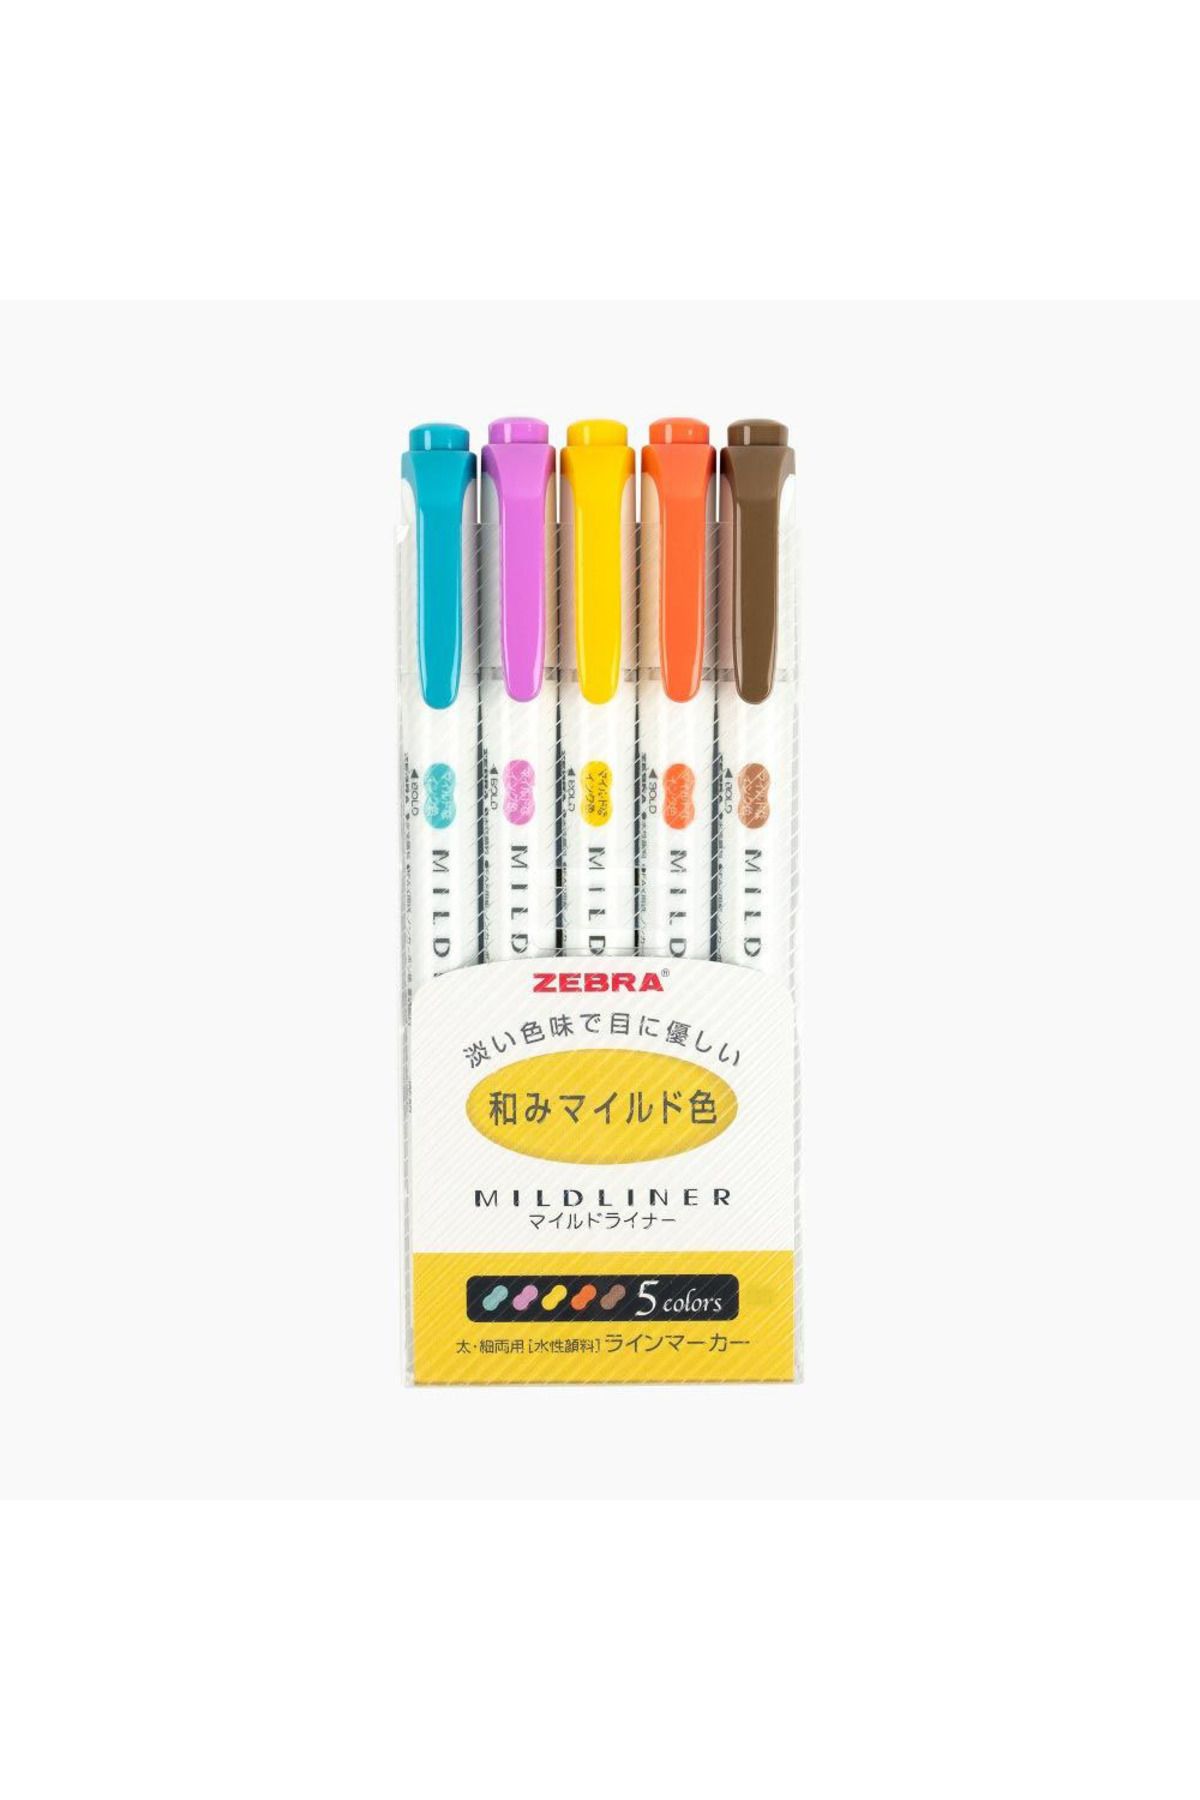 Zebra Mildliner Çift Taraflı Işaretleme Kalemi 5'li Set- Sıcak Renkler